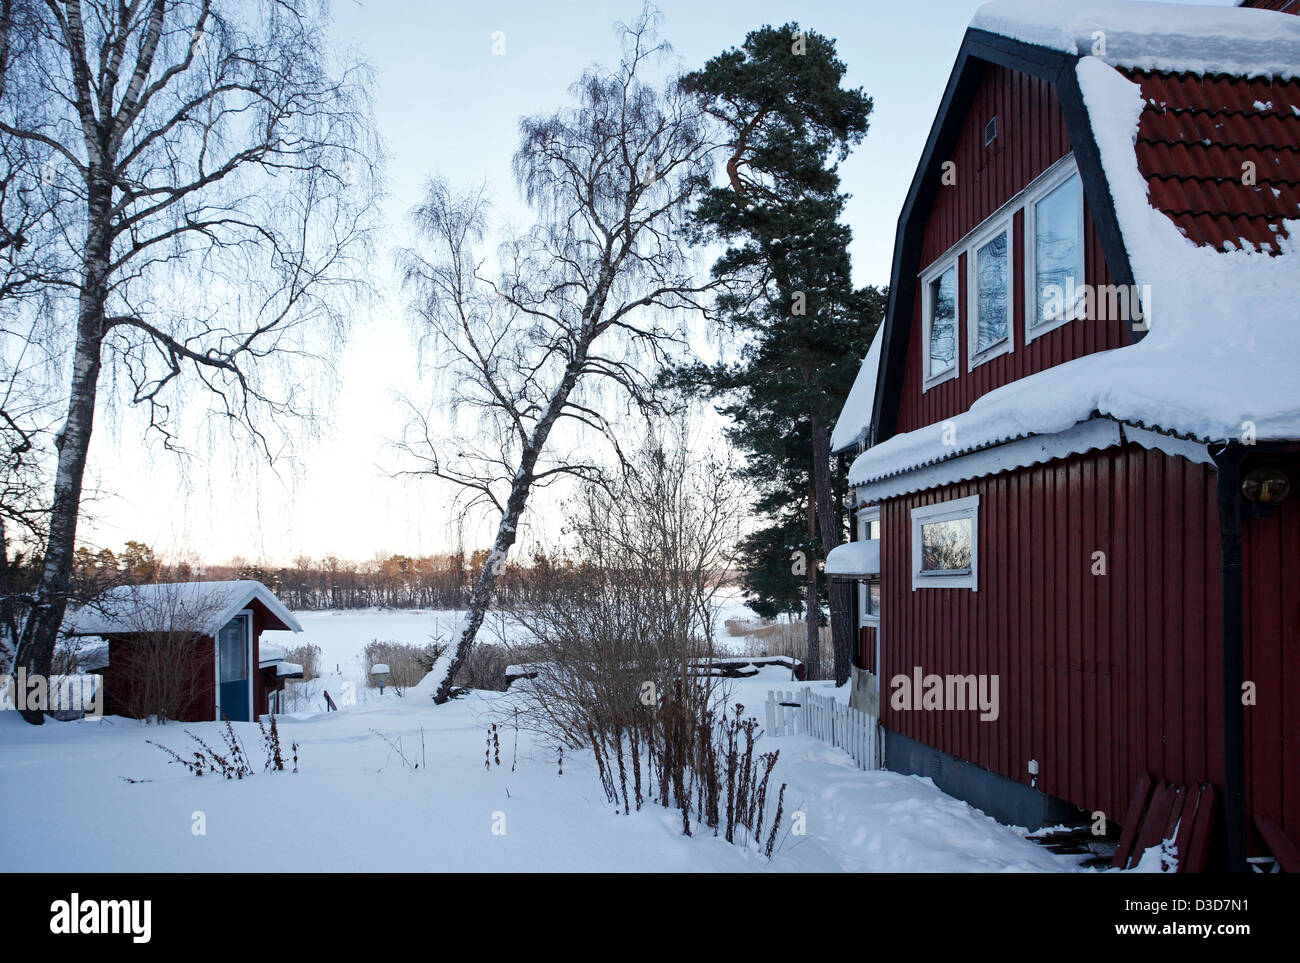 Dill, Sweden, wooden house in the snowbound village Trolldalen Stock Photo